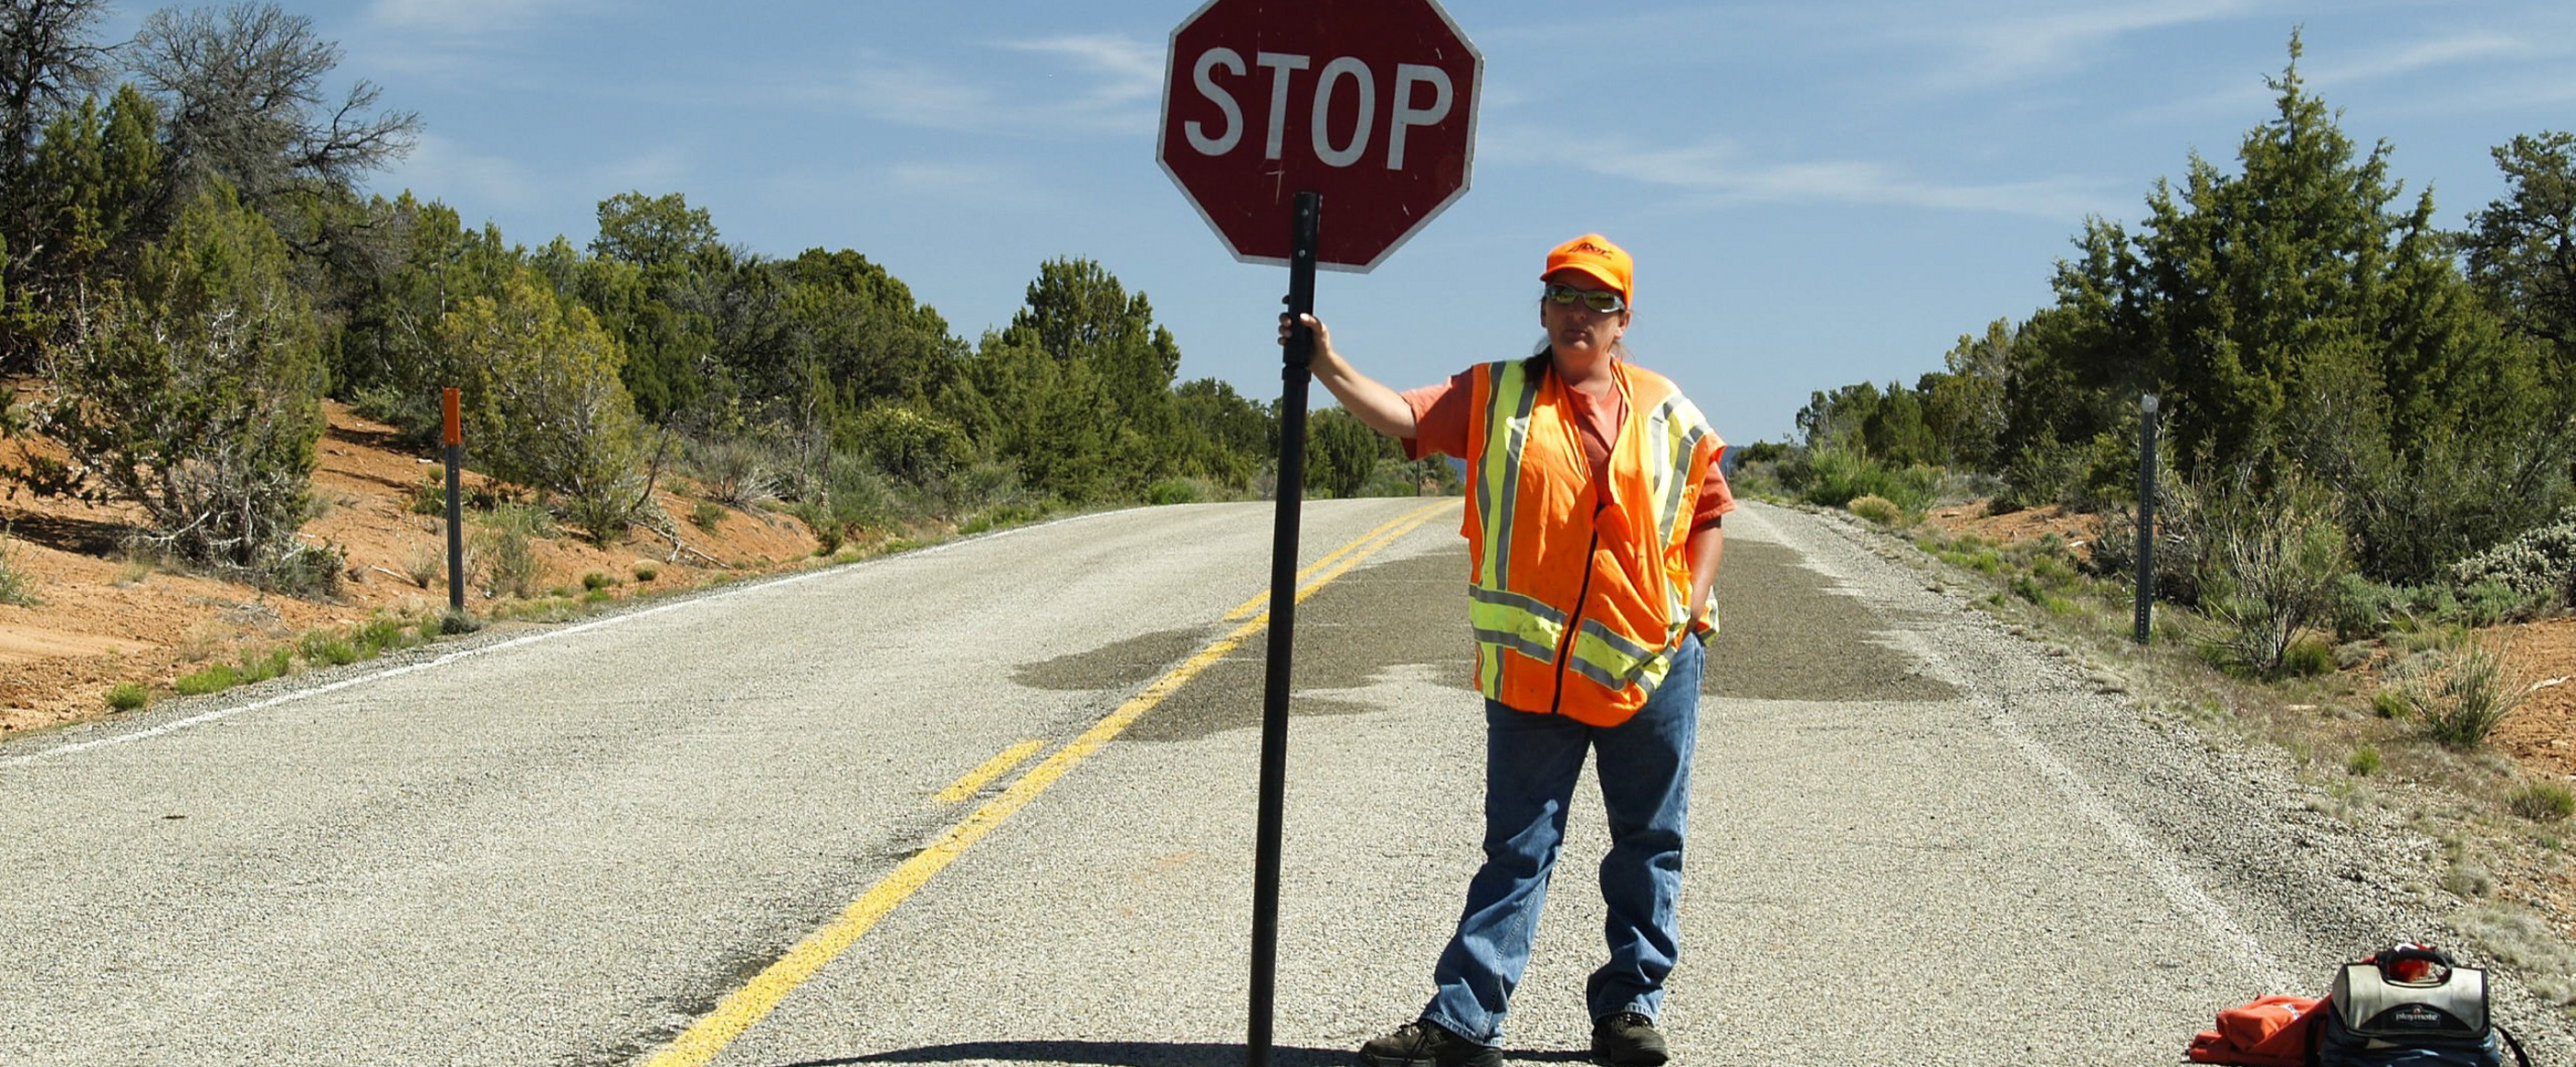 Ein Mann mit Bauarbeiter-Weste steht mit einem Stop-Schild auf einer Straße.